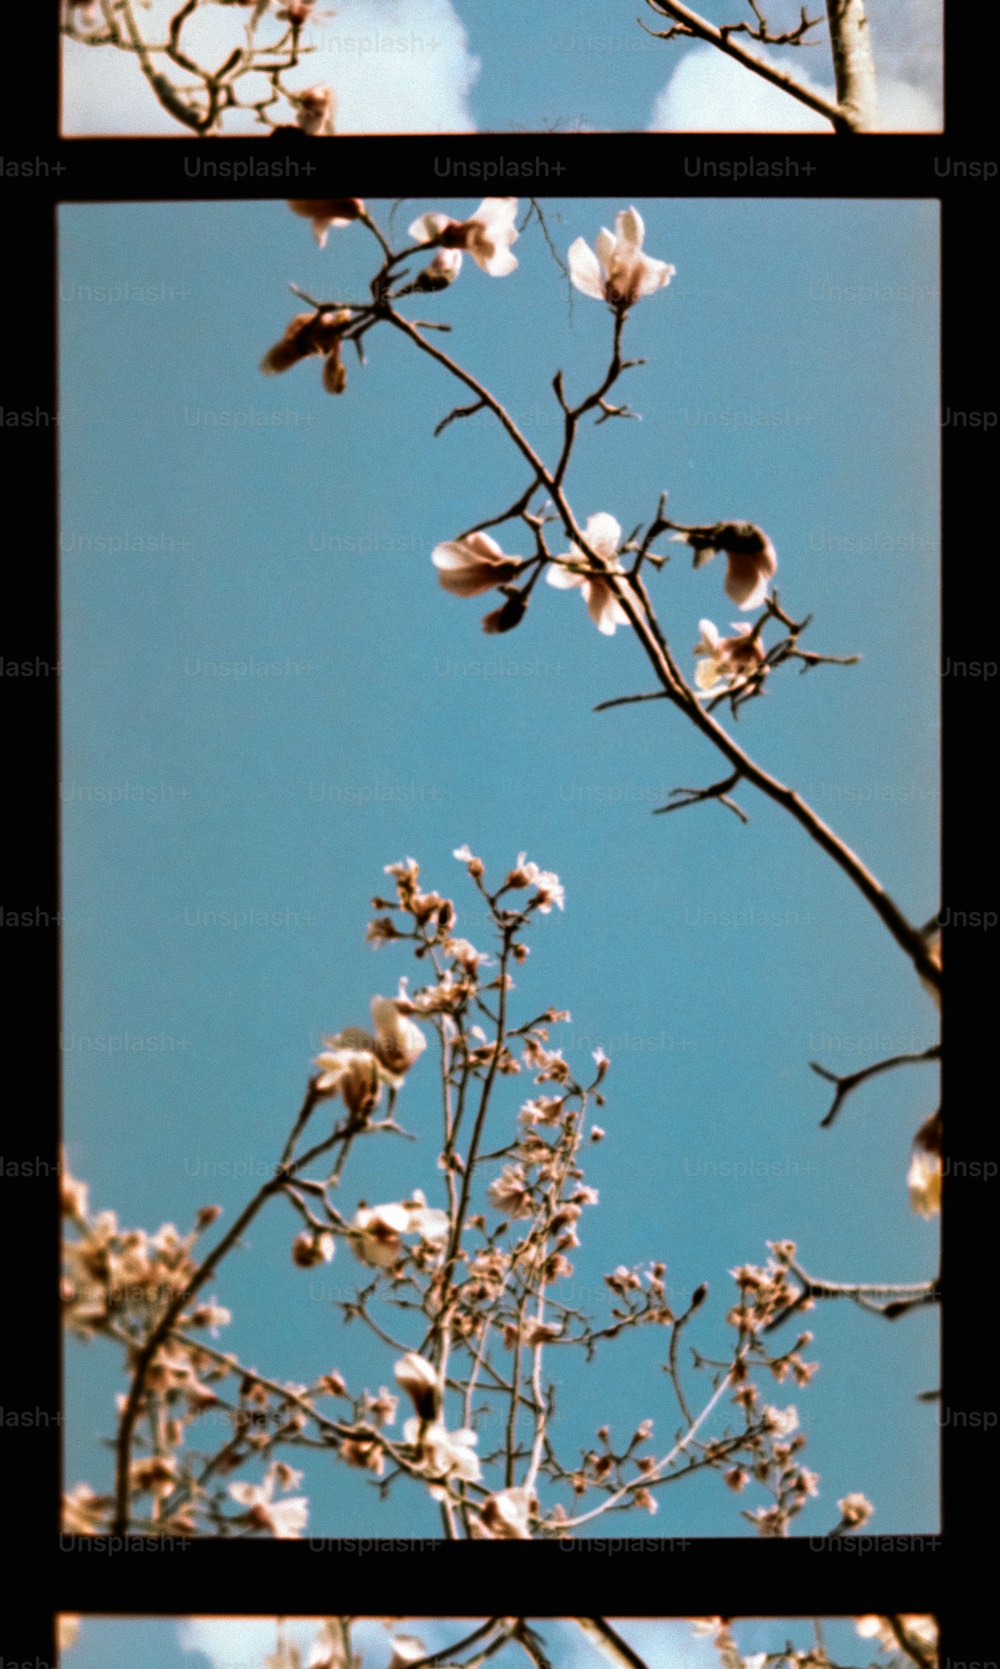 Tres imágenes de un árbol con flores blancas